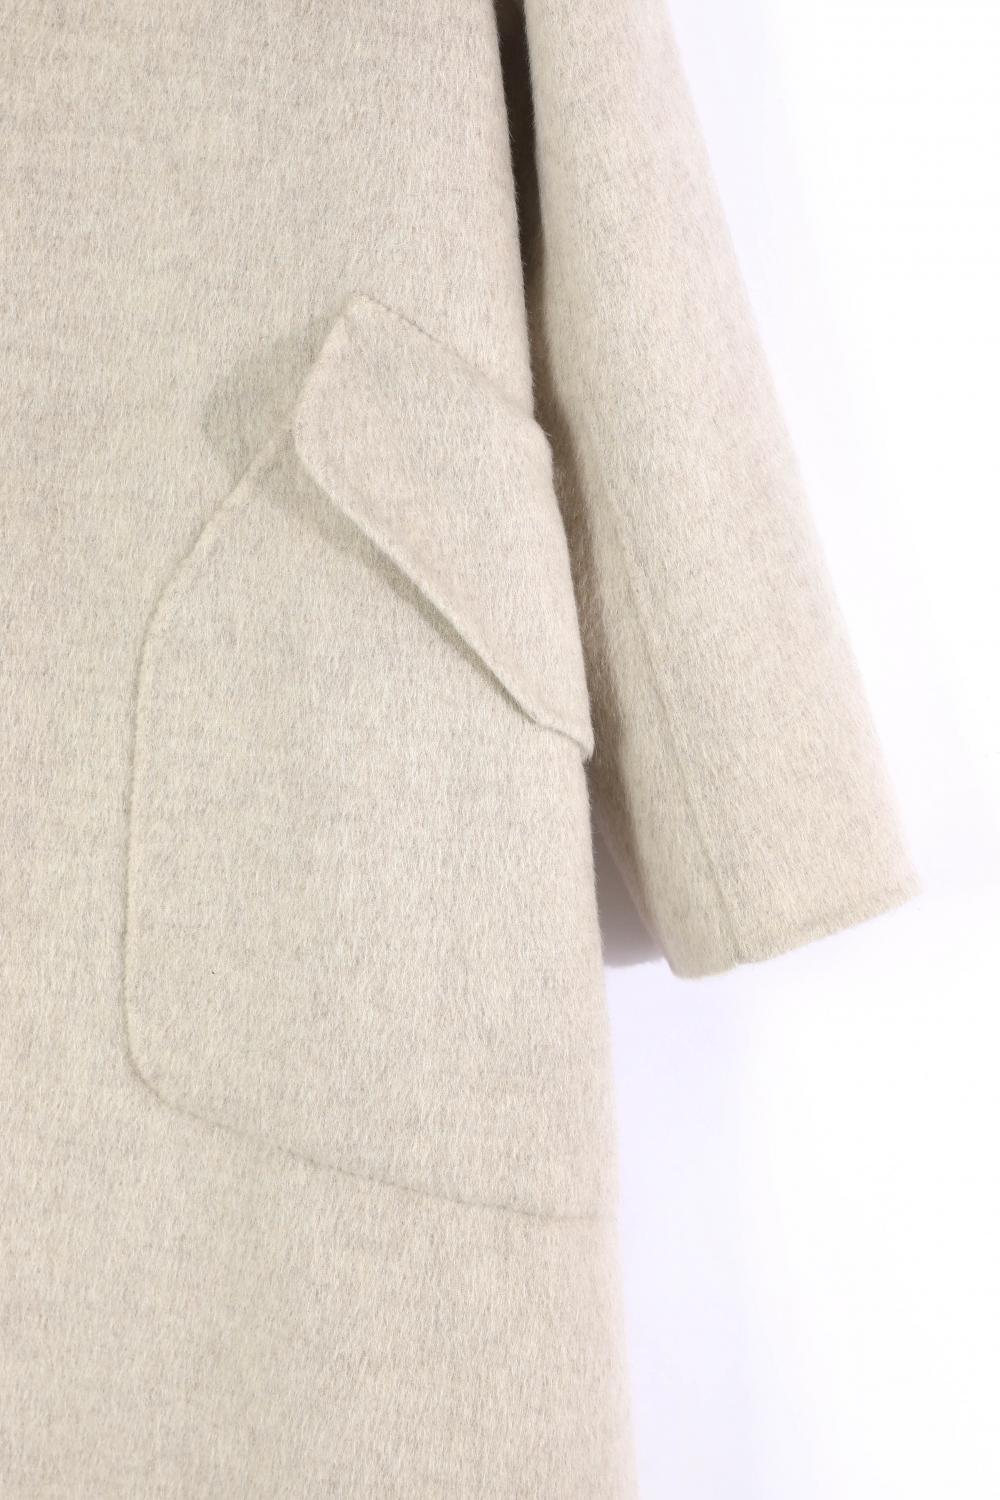 Jaket wol panjang dengan kerah setelan jas